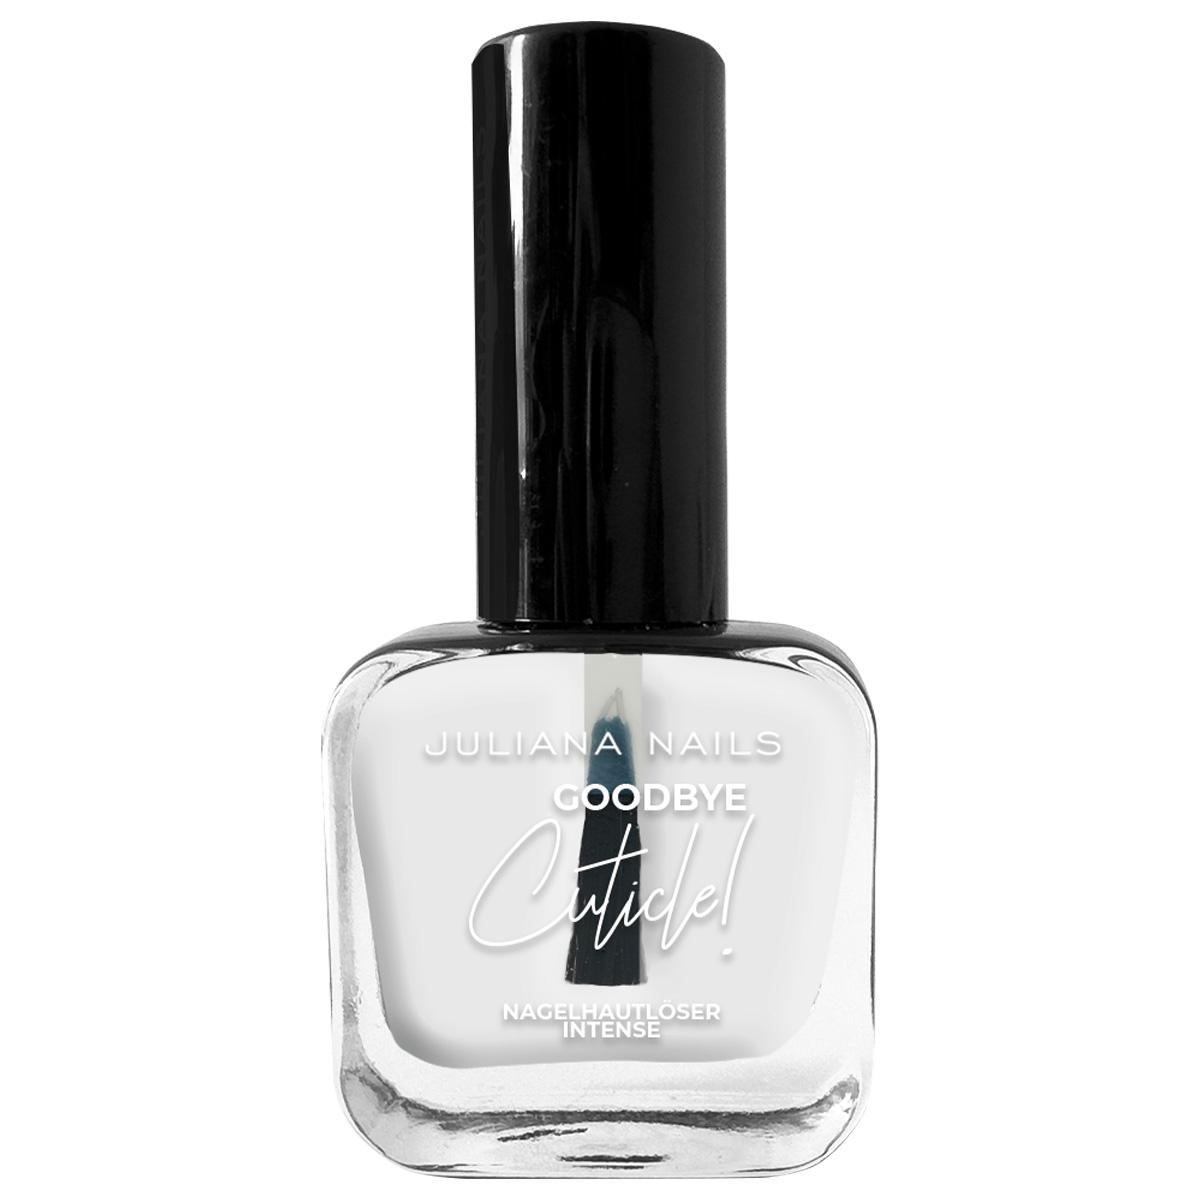 Juliana Nails Goodbye Cuticle - nagelriemverwijderaar 10 ml - 1